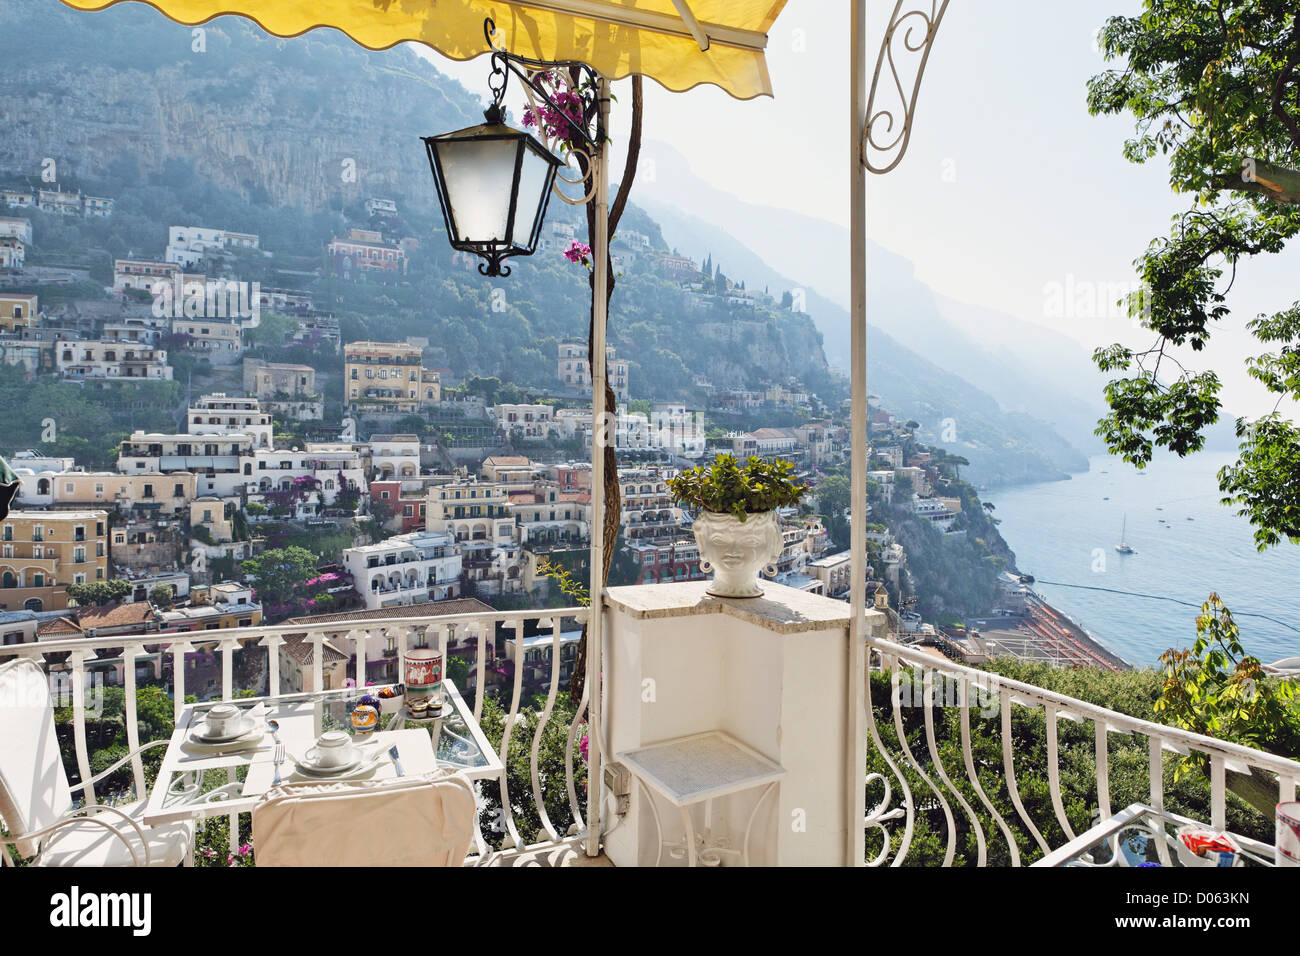 Morning Vista from the Terrace of the Poseidon Hotel, Positano, Campania, Italy Stock Photo